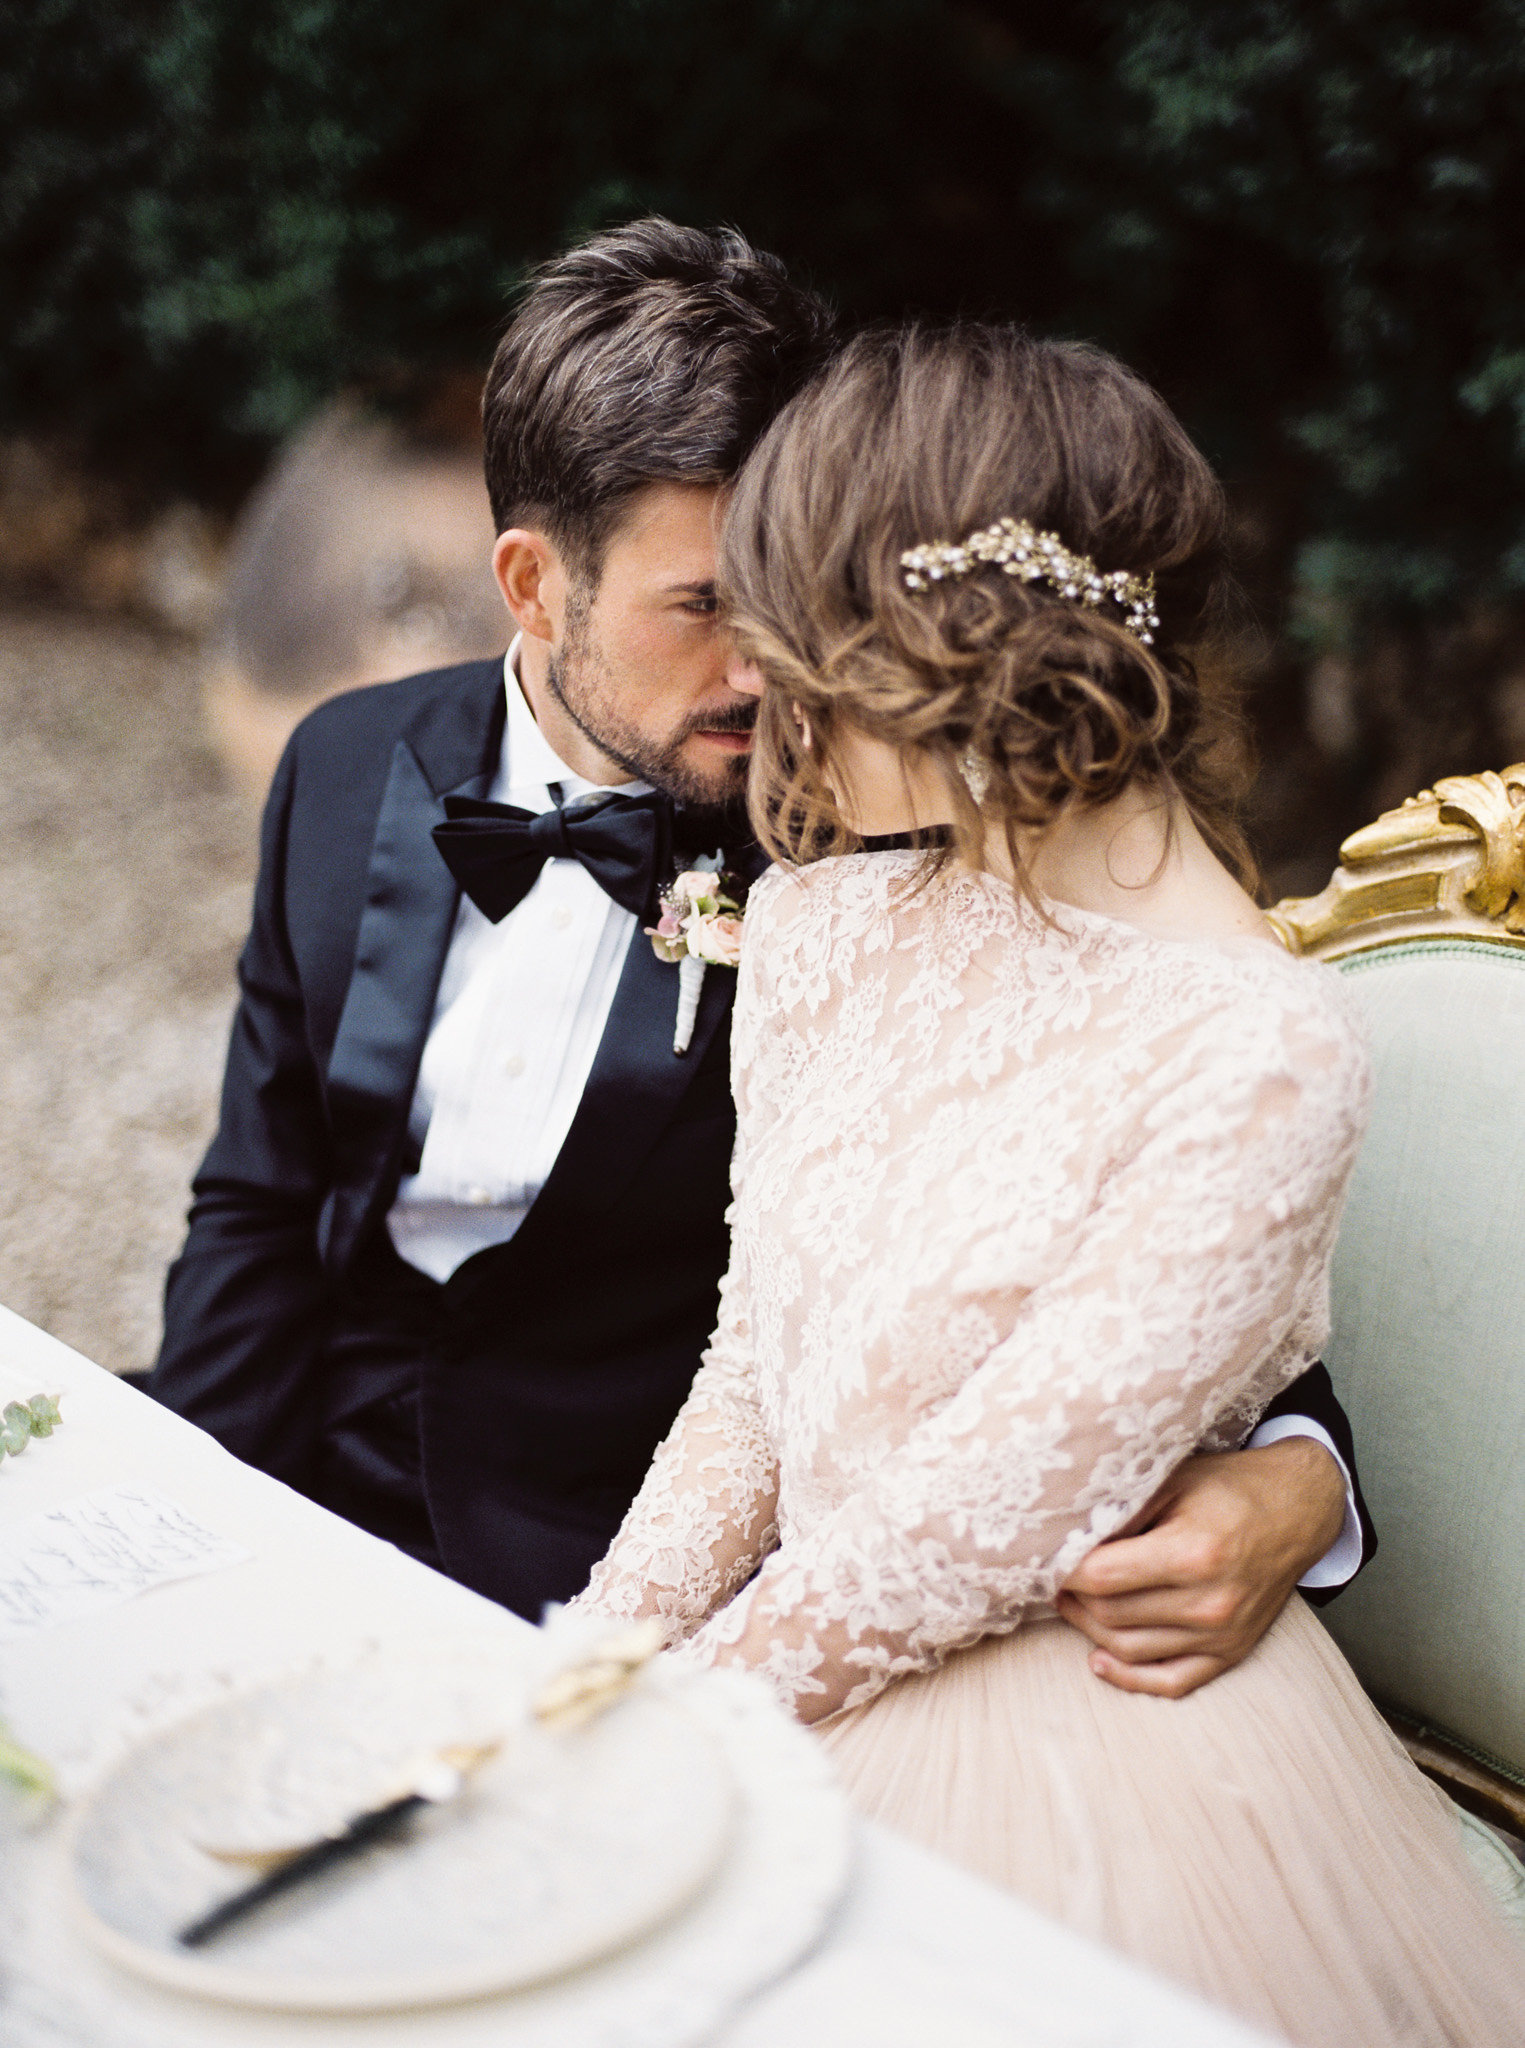 Stunningly elegant elopement ideas from Tuscany | Tuscany Wedding ...